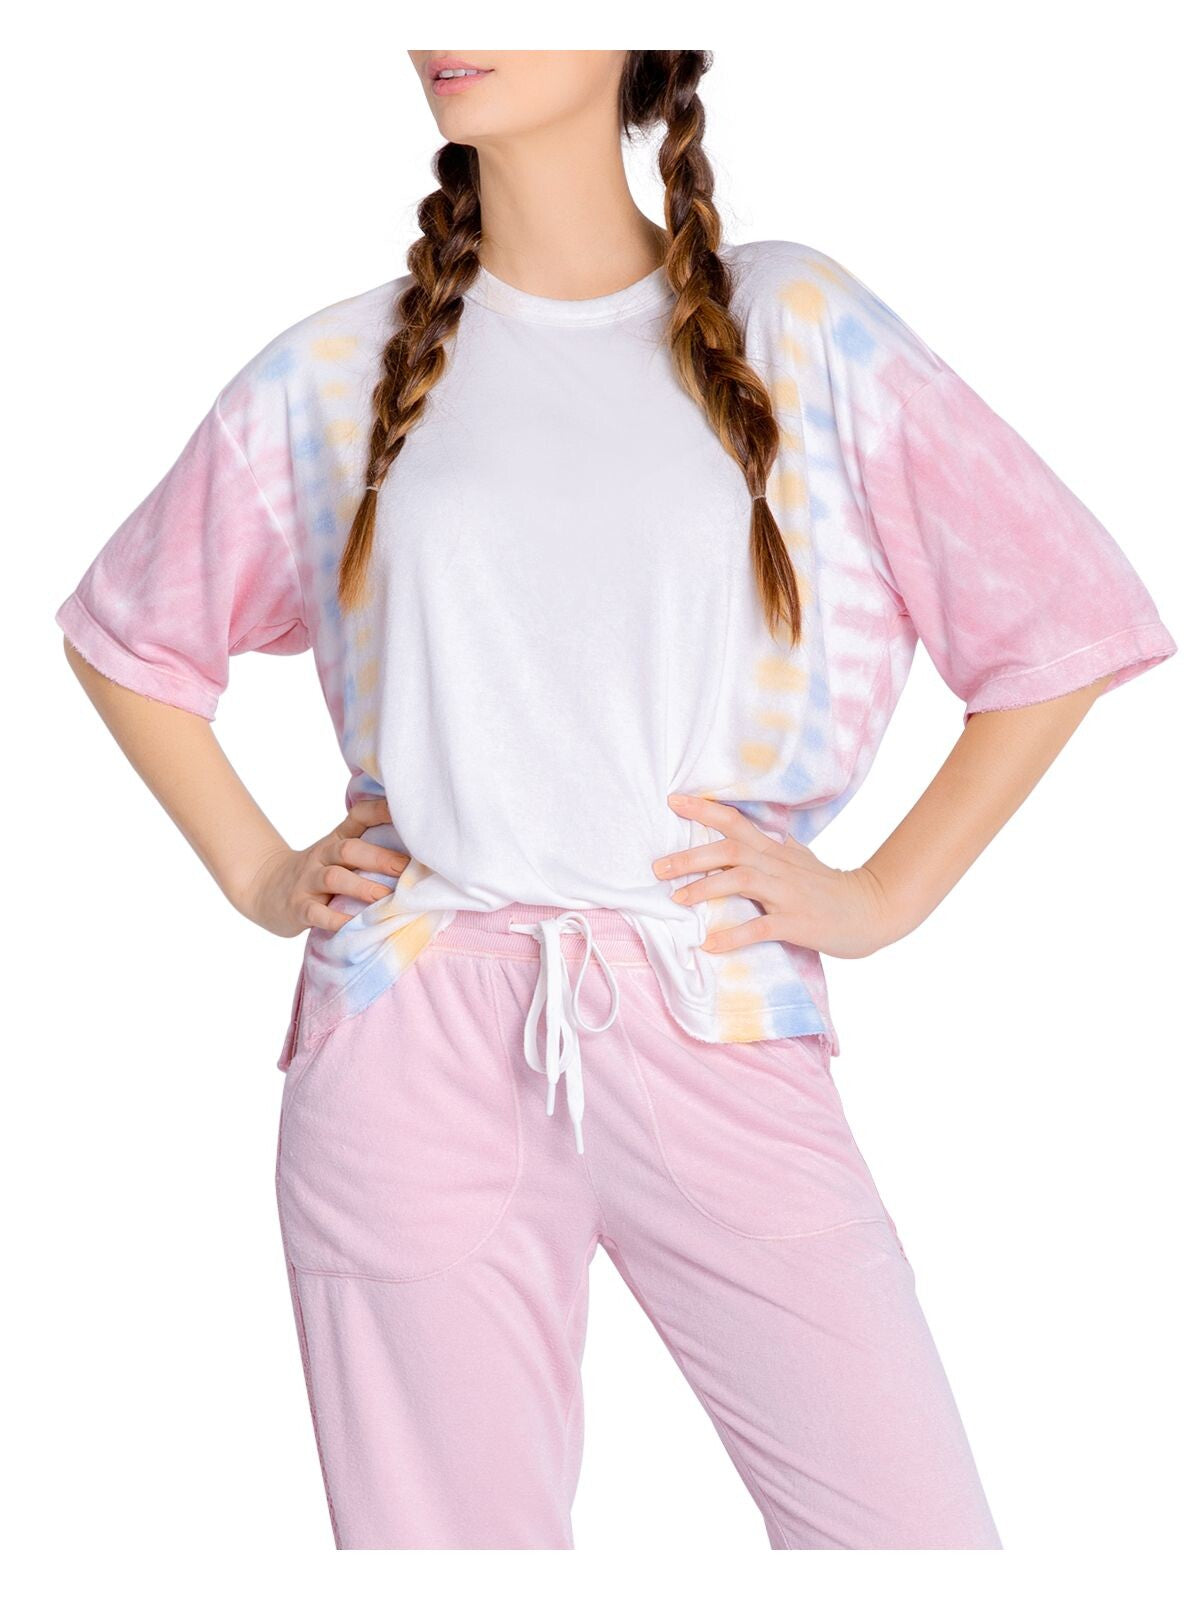 P.J. SALVAGE Intimates White Knit Vented Hem Sleep Shirt Pajama Top L